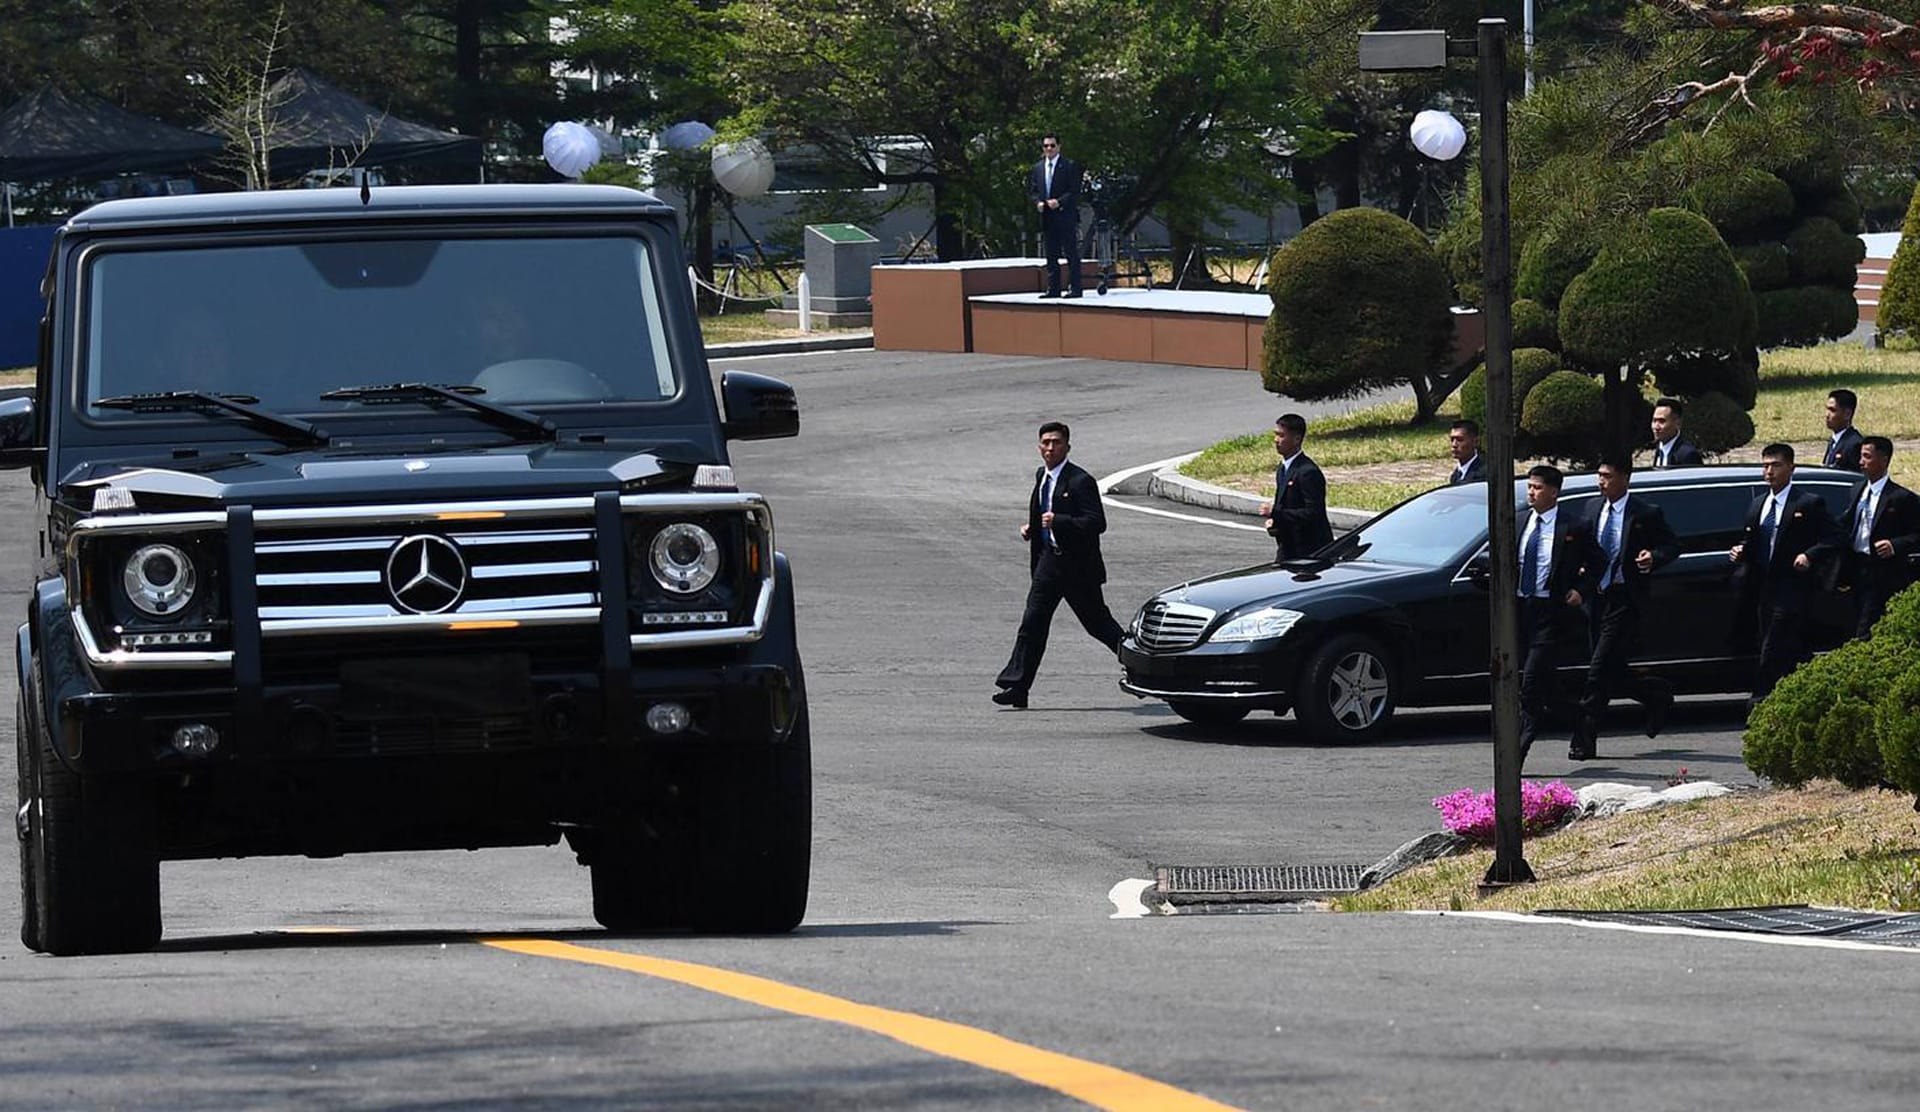 Kim Jong Un: Seine Leibwächter fahren Mercedes G-Klasse